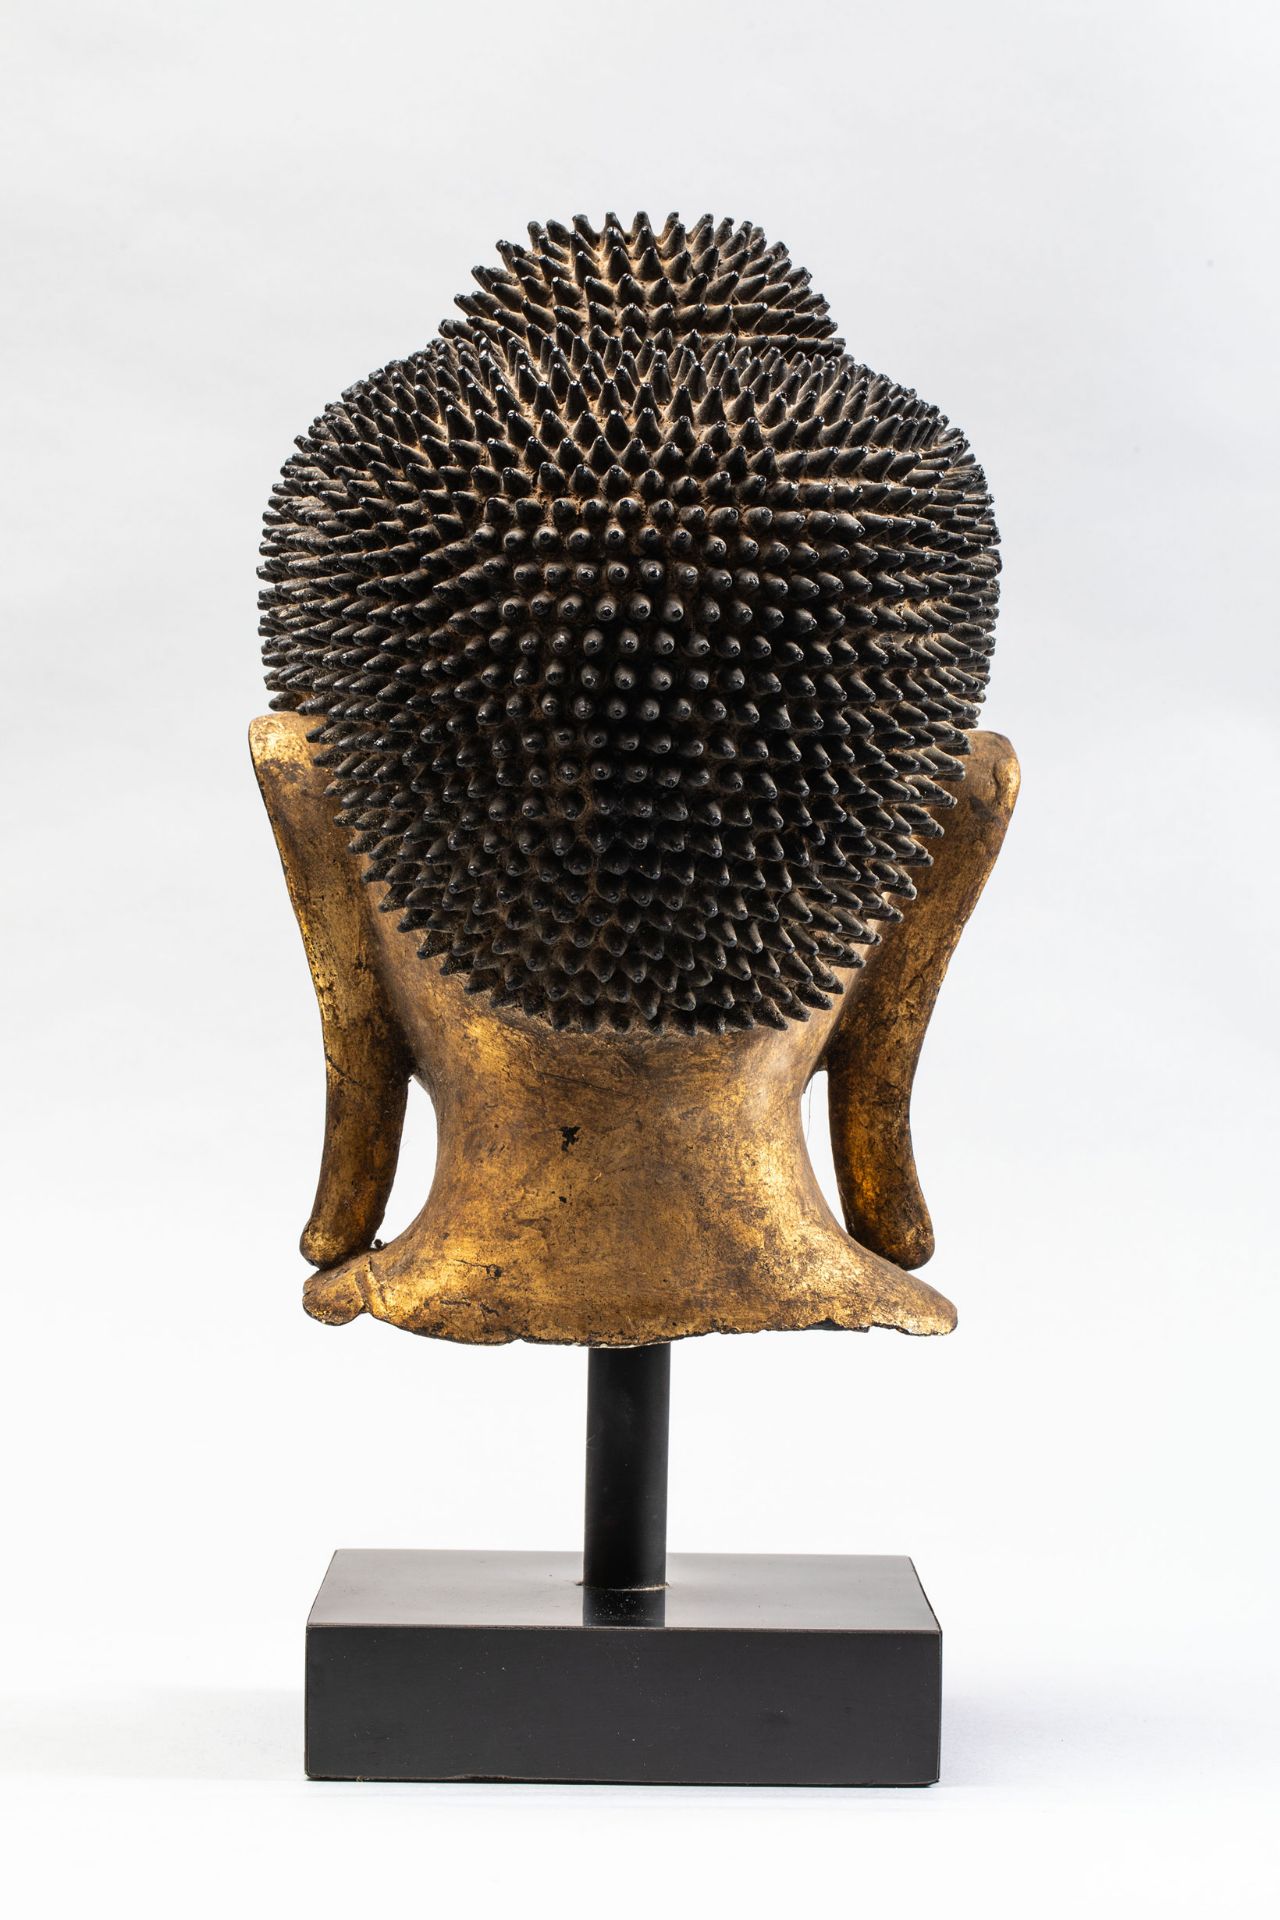 Tête de Buddha coiffée de fines bouclettes hérissées surmontée de la protubérance crânienne ushnisha - Bild 4 aus 4